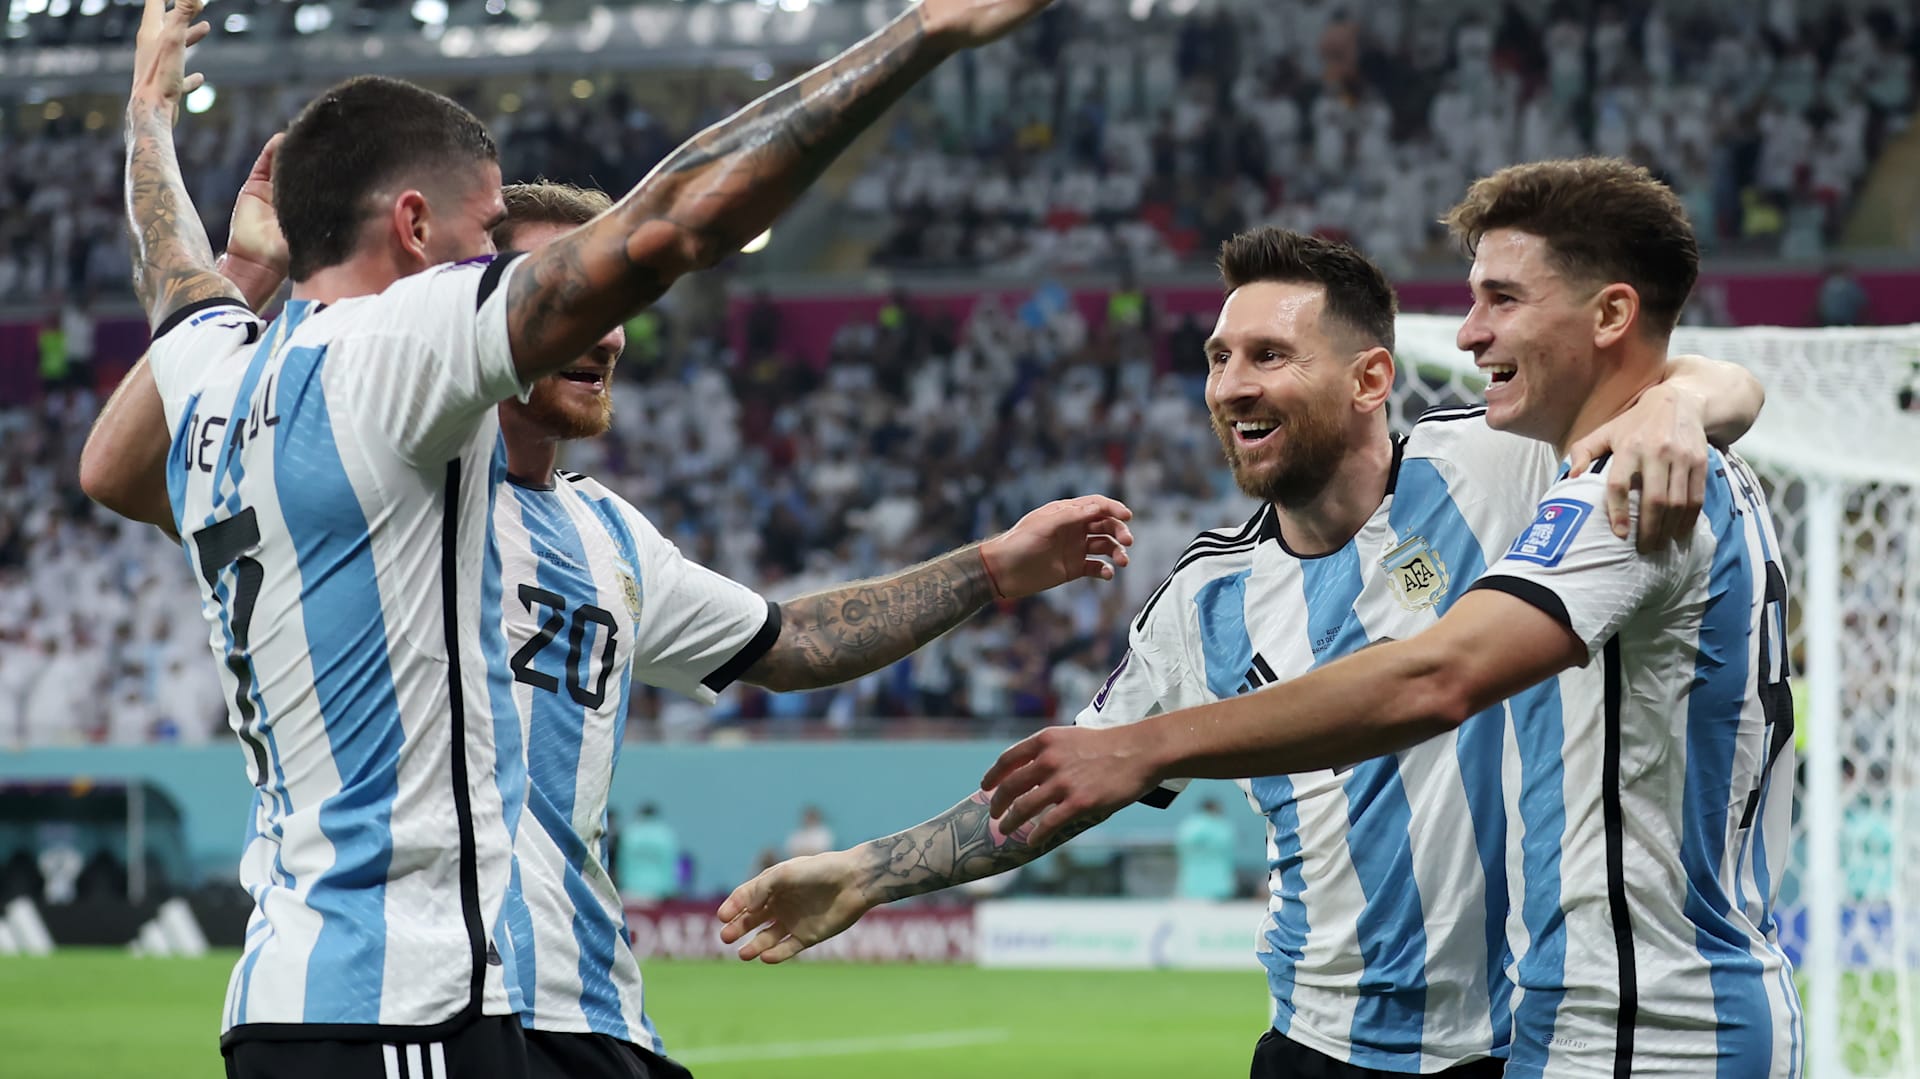 Juegos Olímpicos: Argentina enfrentará a España obligado a ganar para  clasificar